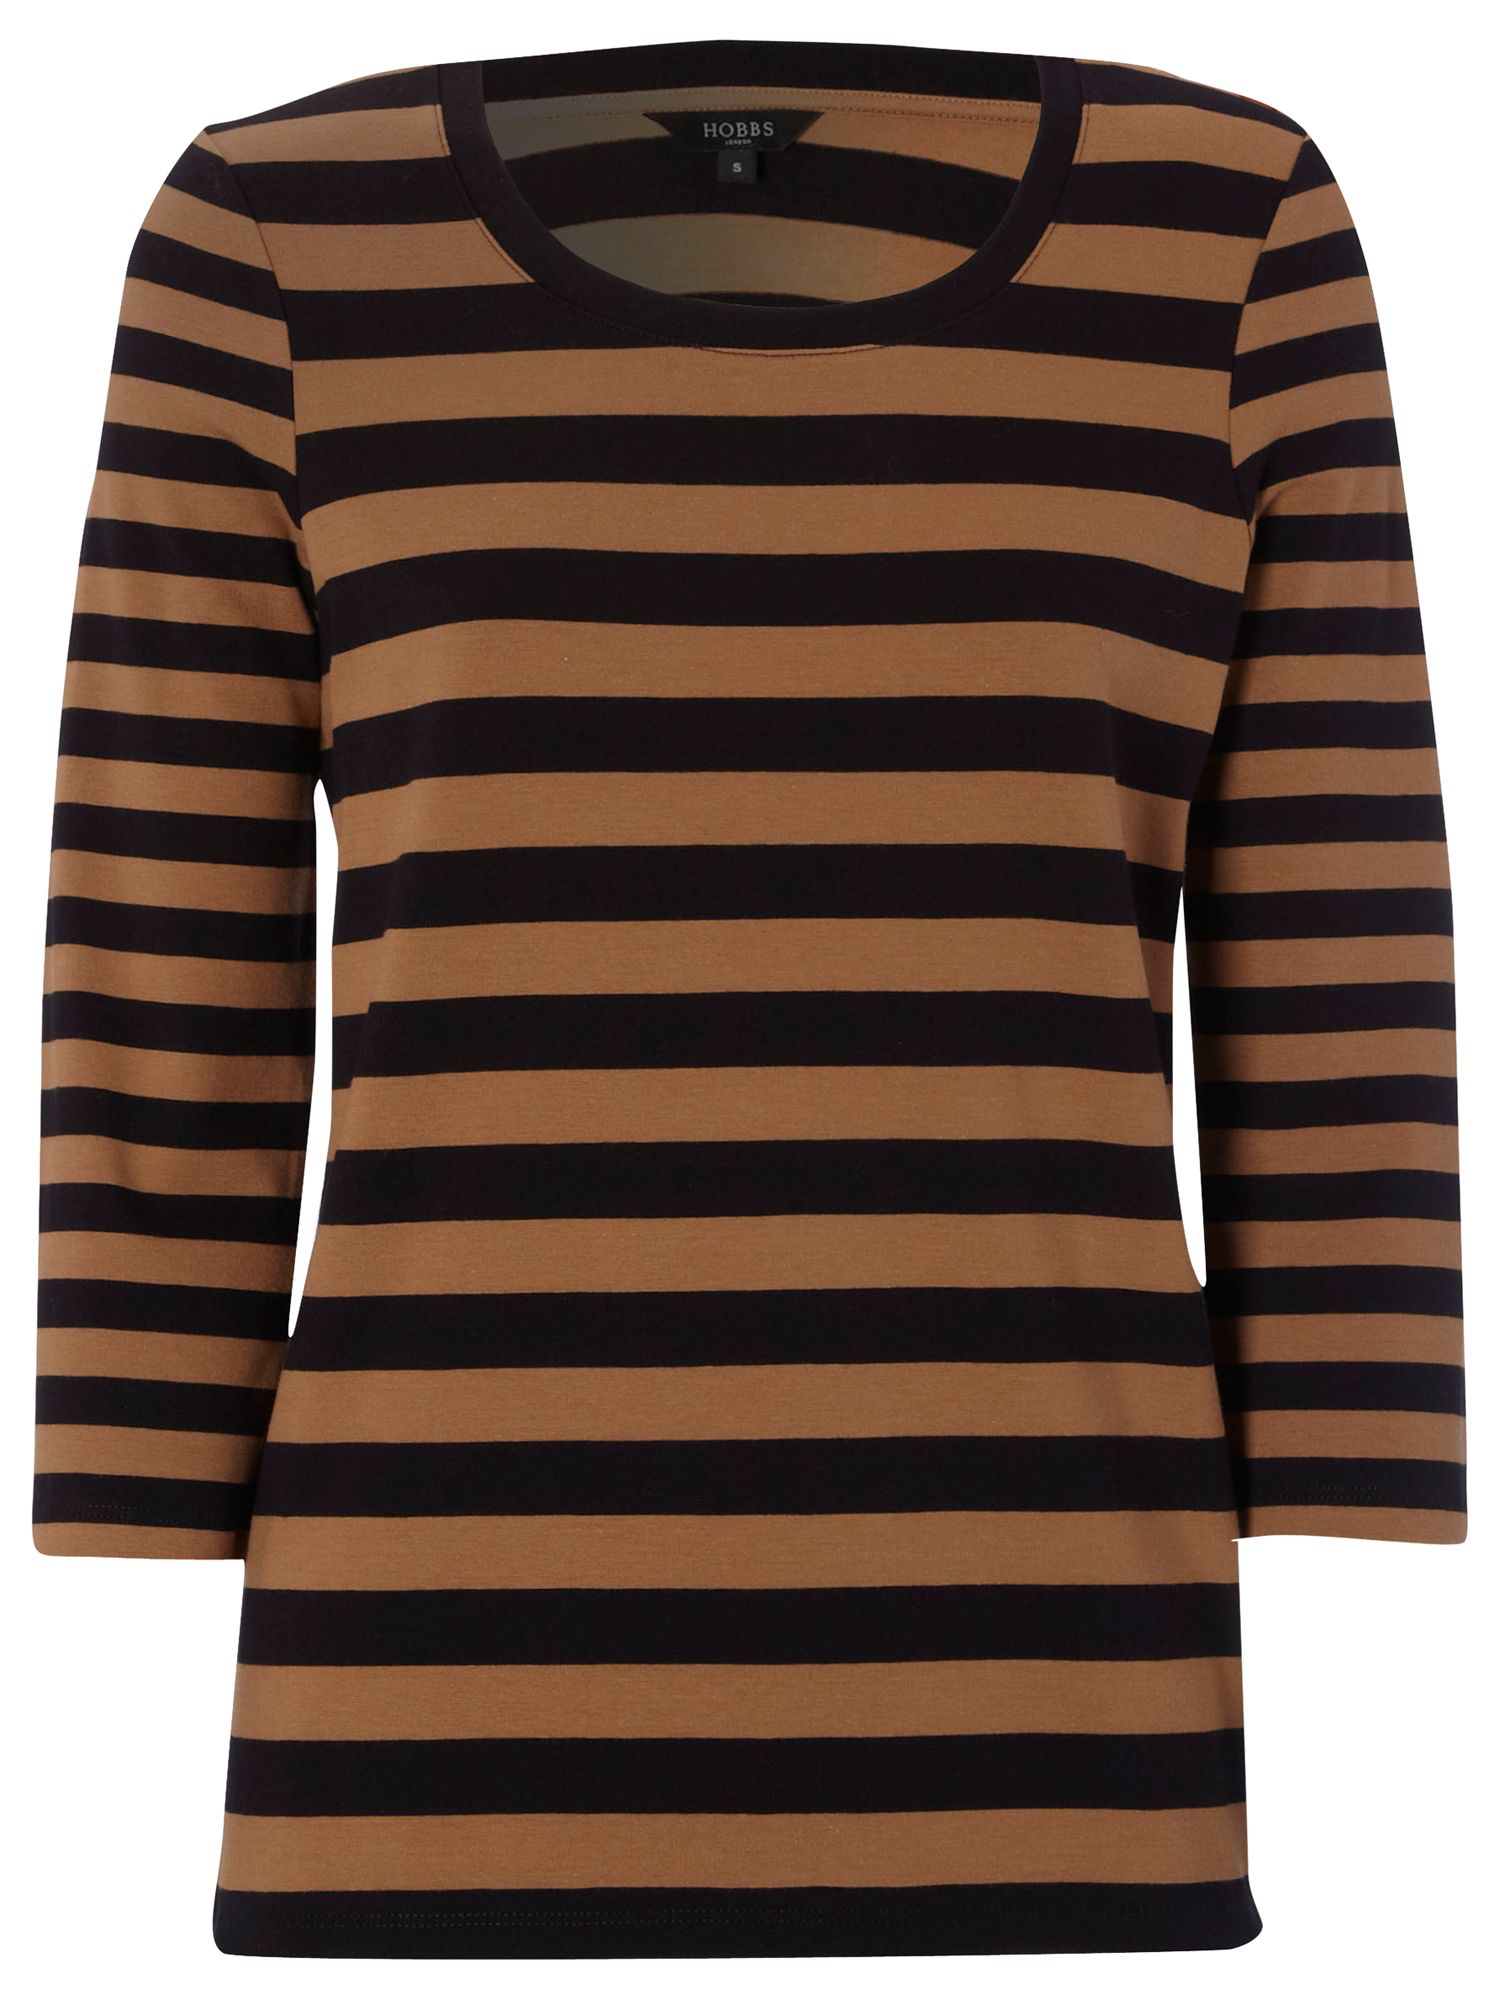 Croft Striped T-Shirt, Navy Vicuna